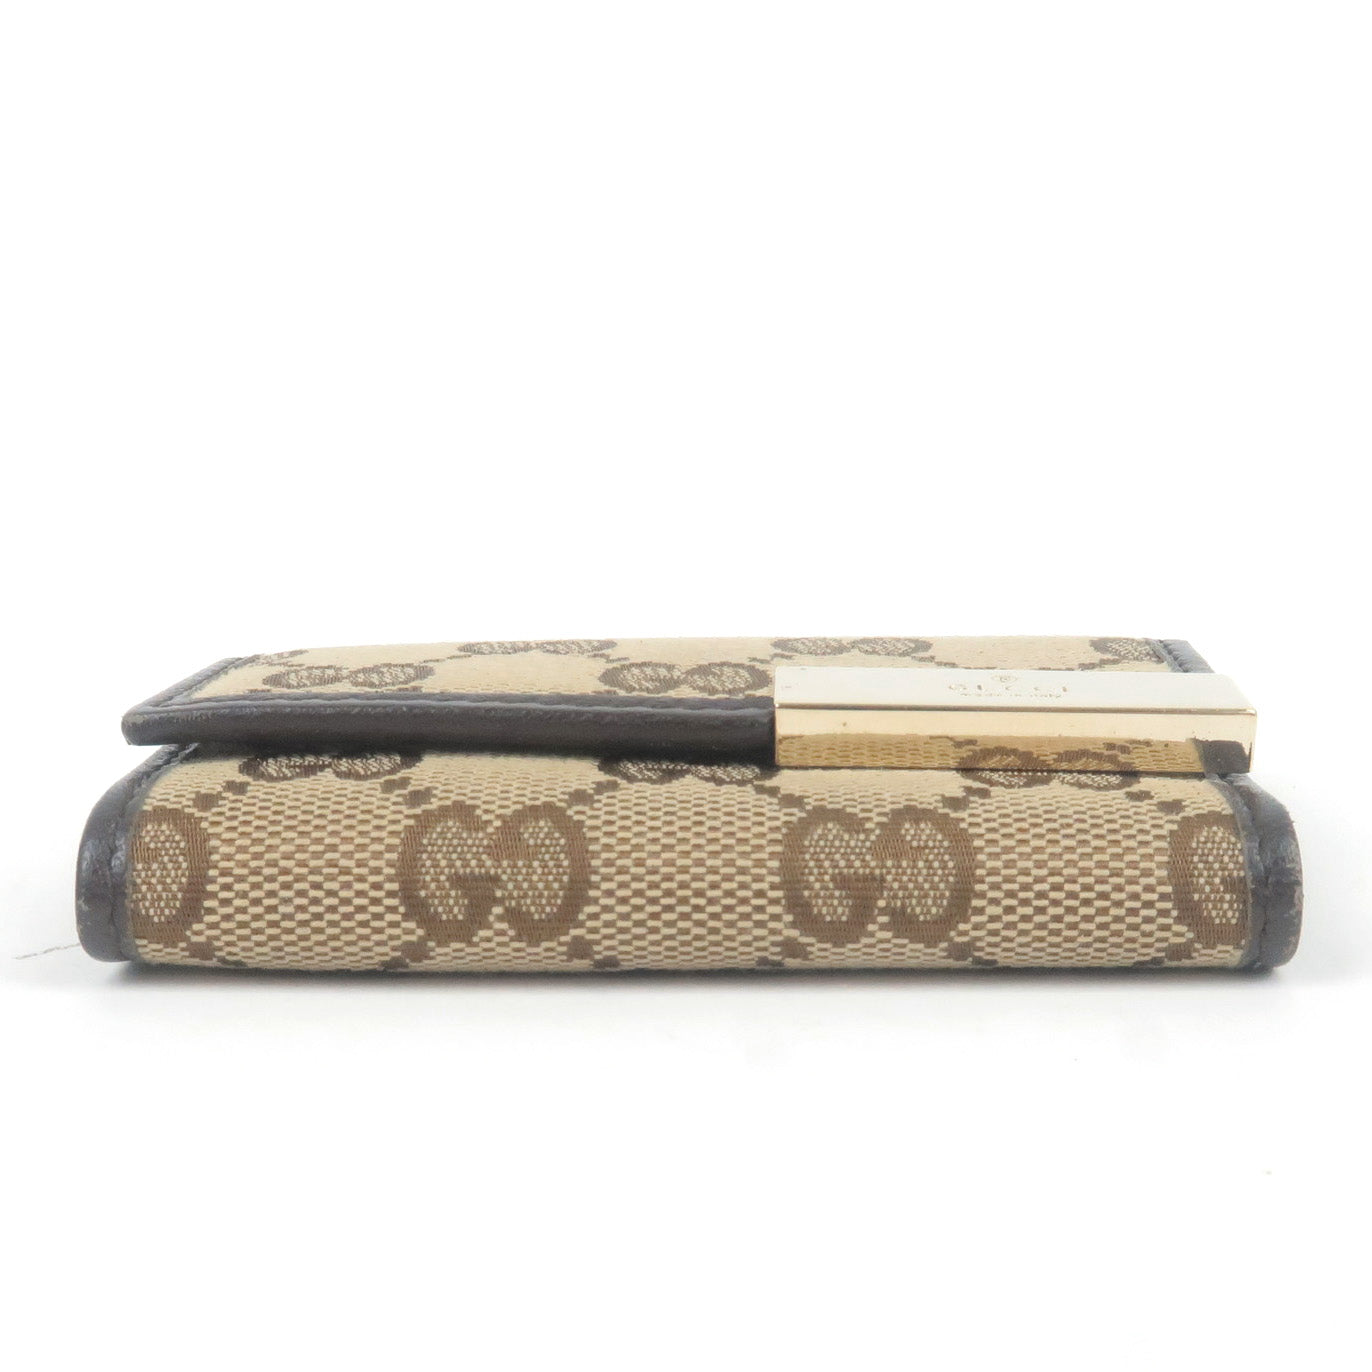 Gucci Beige Original GG Canvas Brown Leather Trim Wallet – Queen